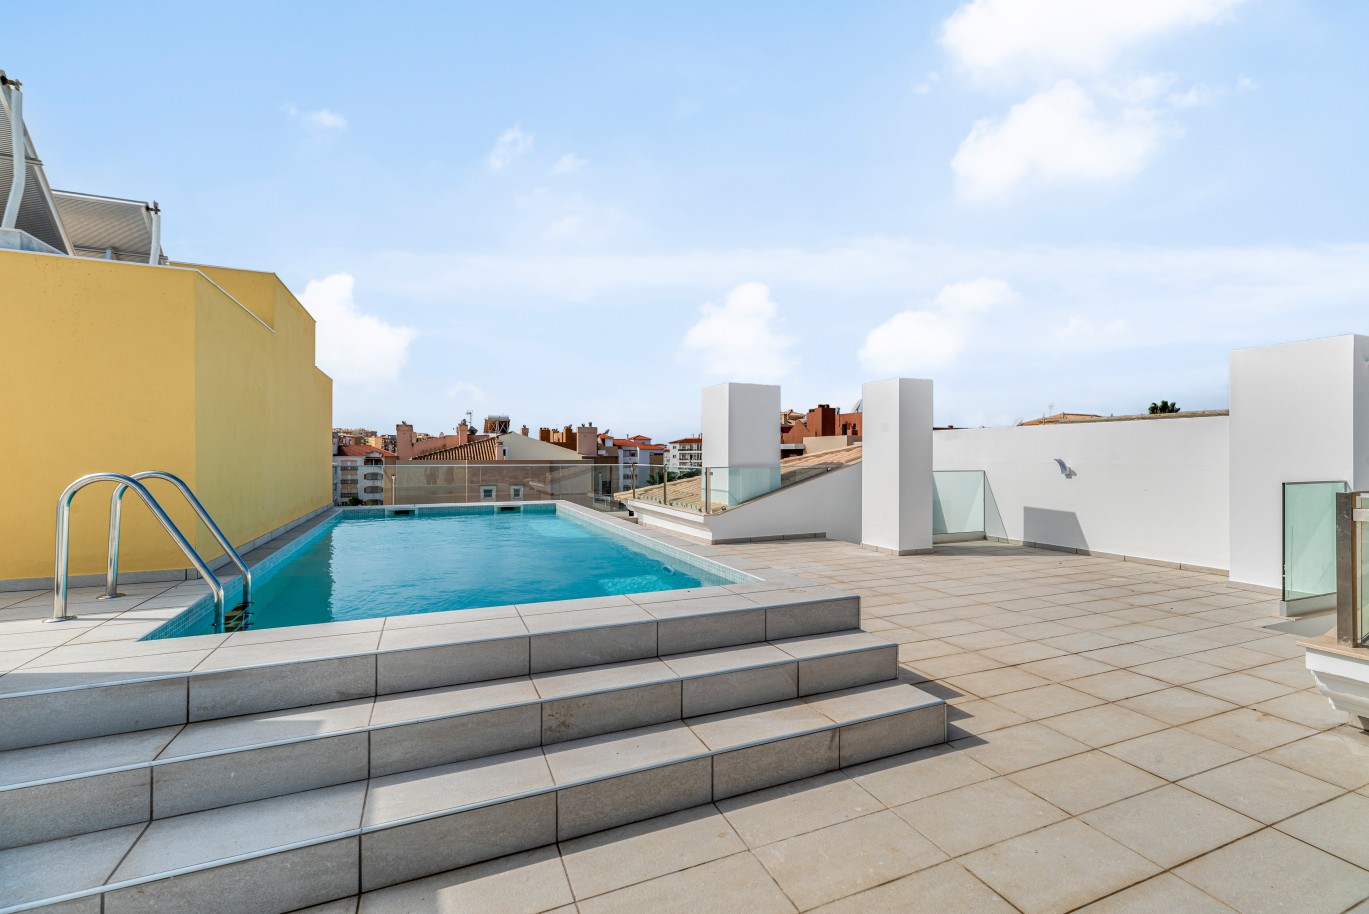 Apartamento em construção, com terraço, para venda, em Lagos, Algarve_238545